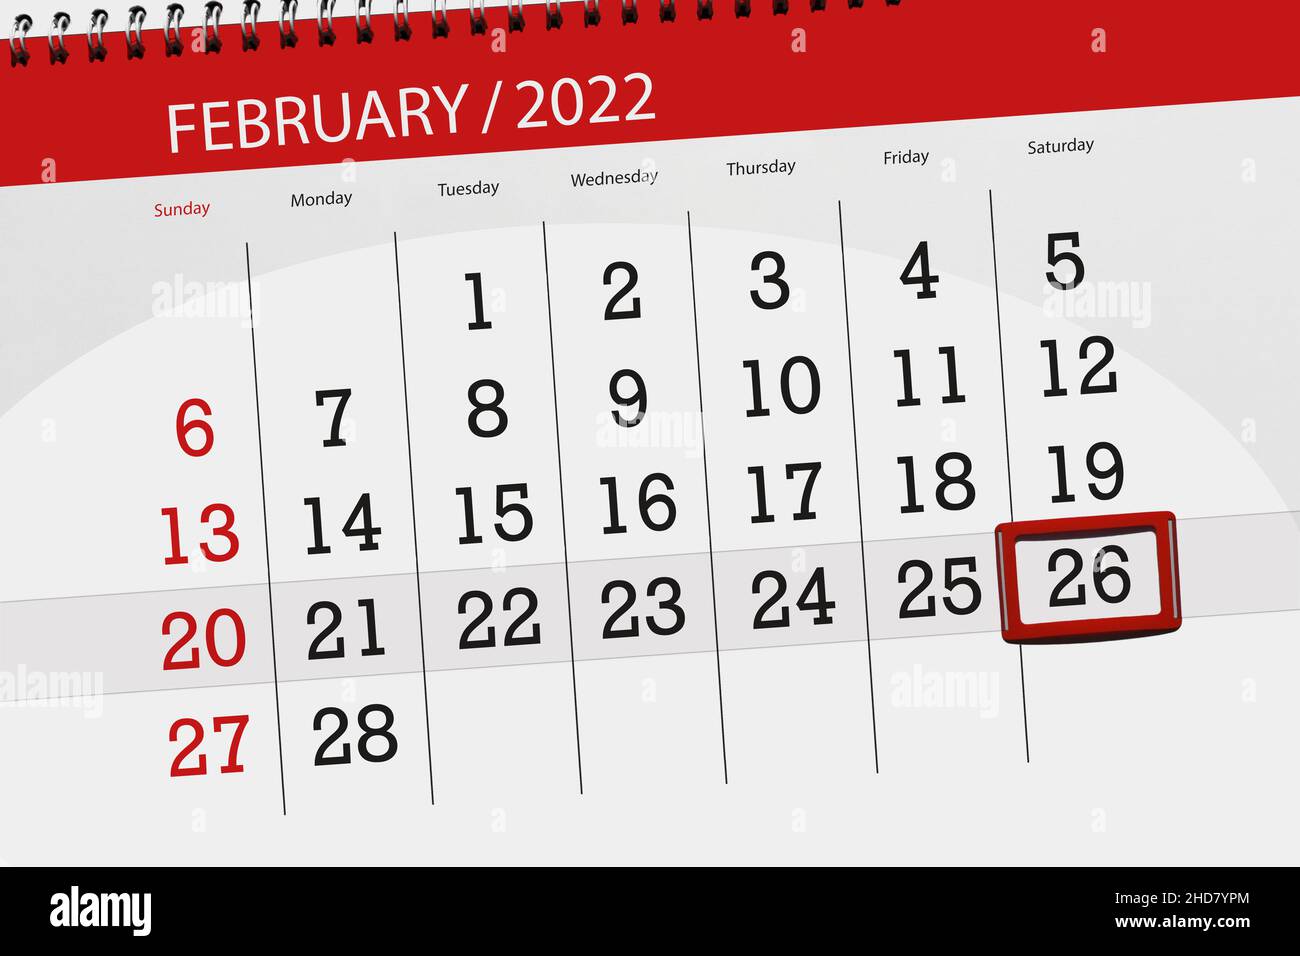 Kalenderplaner für den Monat februar 2022, Stichtag, 26, samstag. Stockfoto